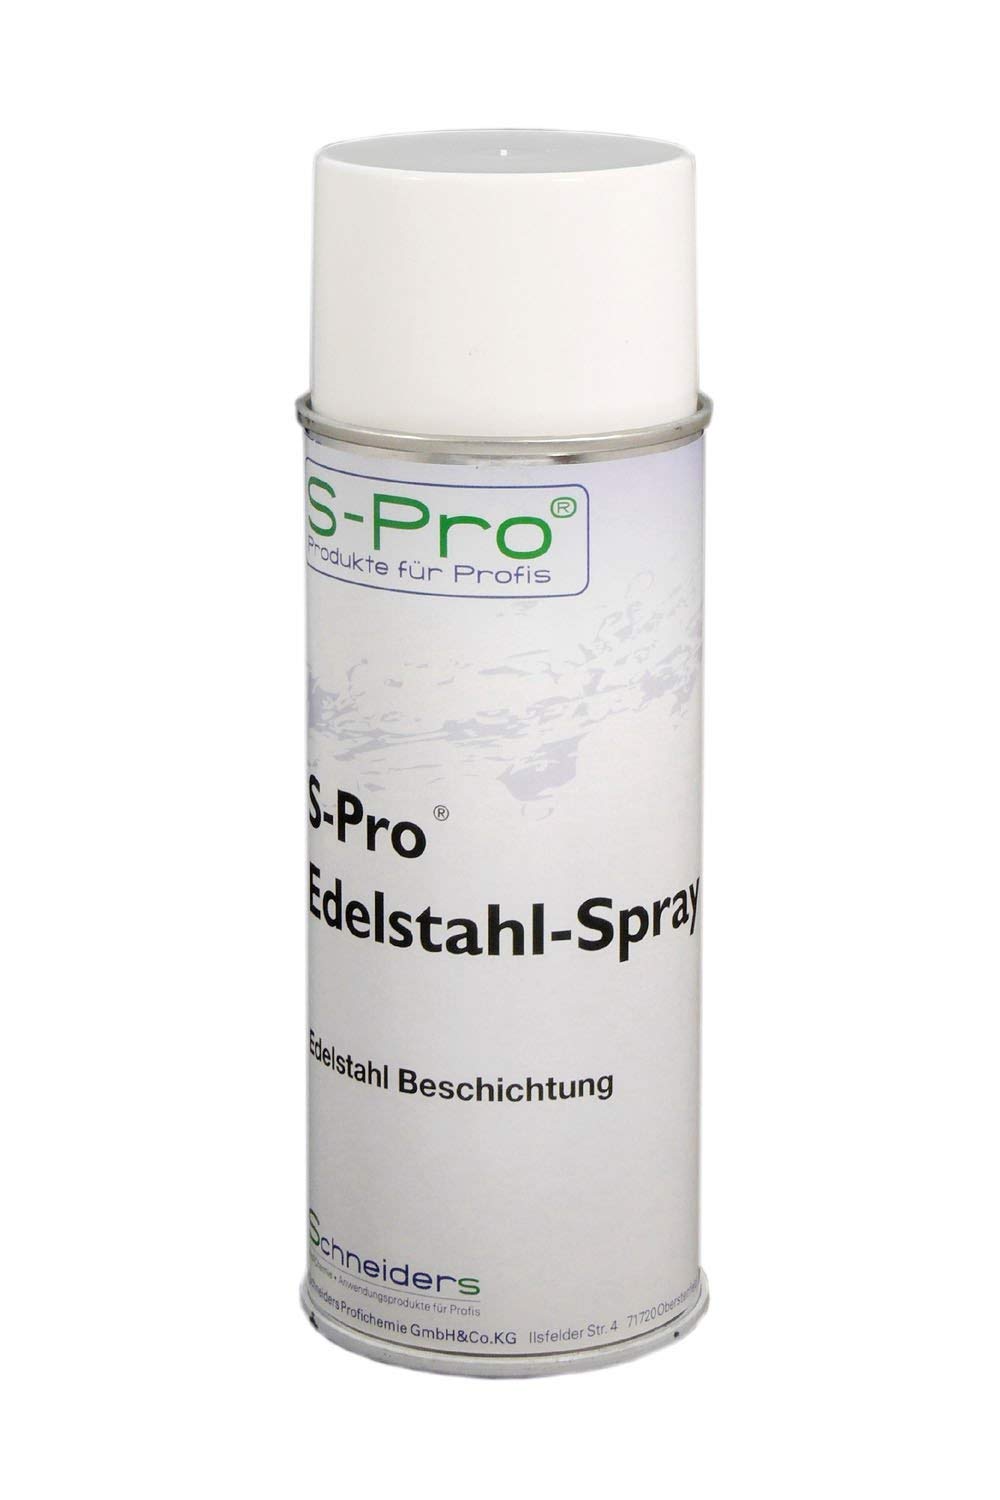 S-Pro Edelstahl-Spray Korrosionsschutz und Lackspray, Oberflächenbeschichtung Spray, Versiegelung, 1 x 400ml Dose im Set von S-Pro